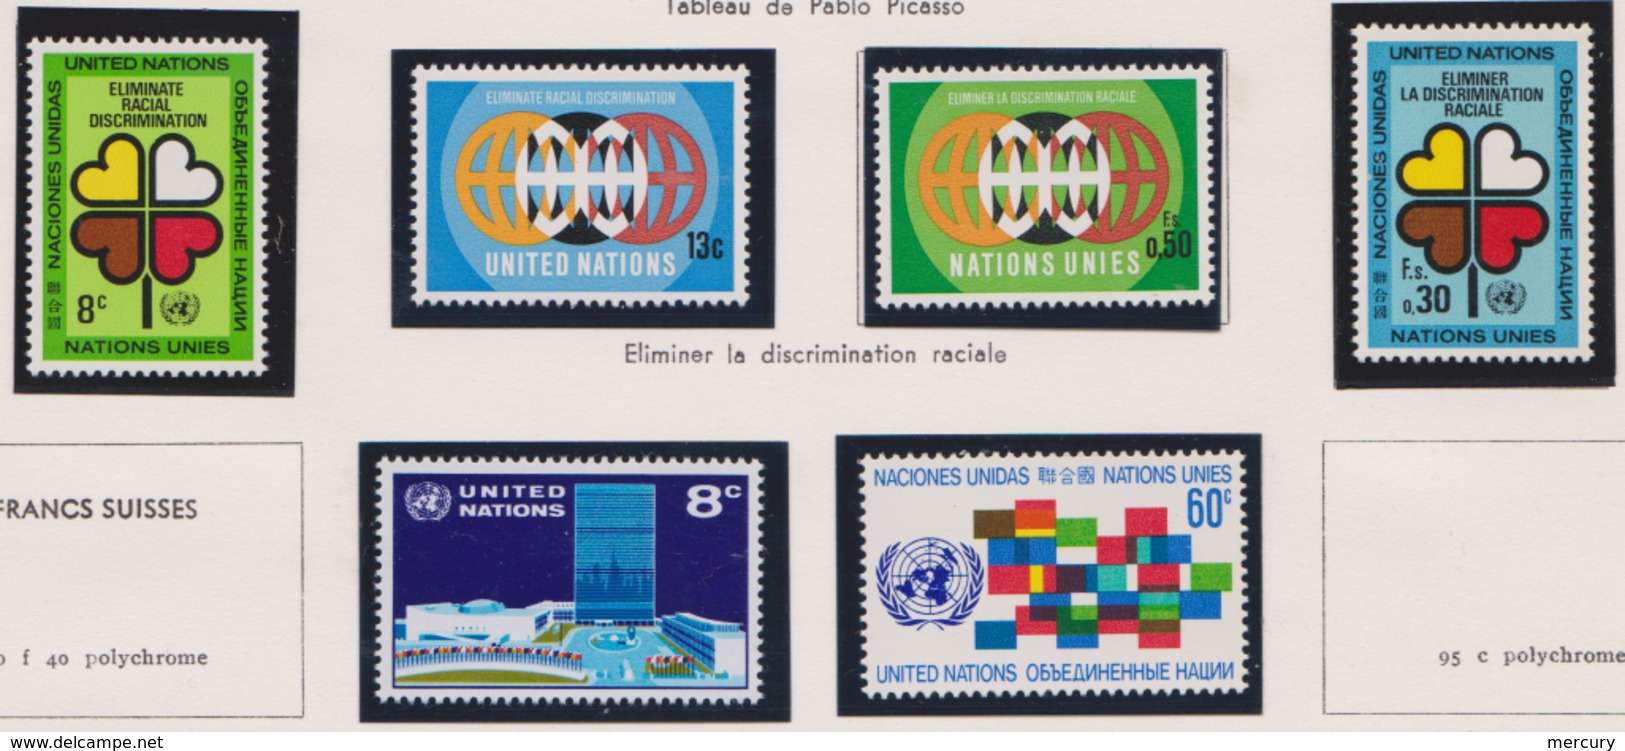 NATIONS-UNIES - Bonne collection quasi complète de 1951 à 1971 neuve LUXE + quelques Genève - 18 scans